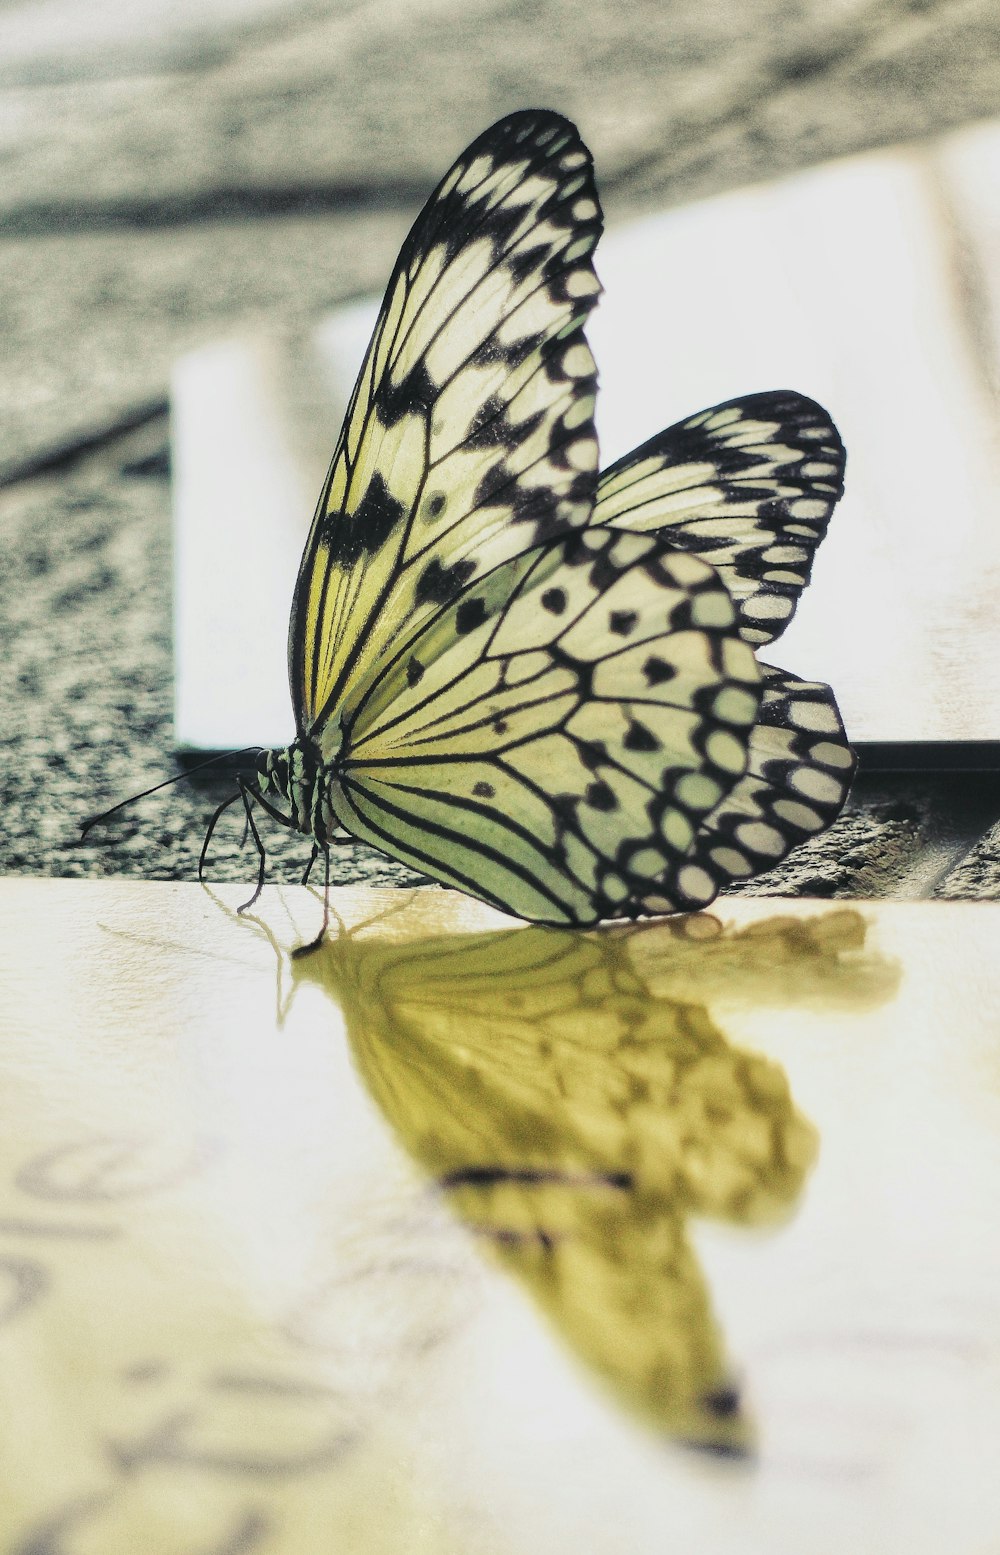 테이블 위에 앉아 있는 노란색과 검은색 나비